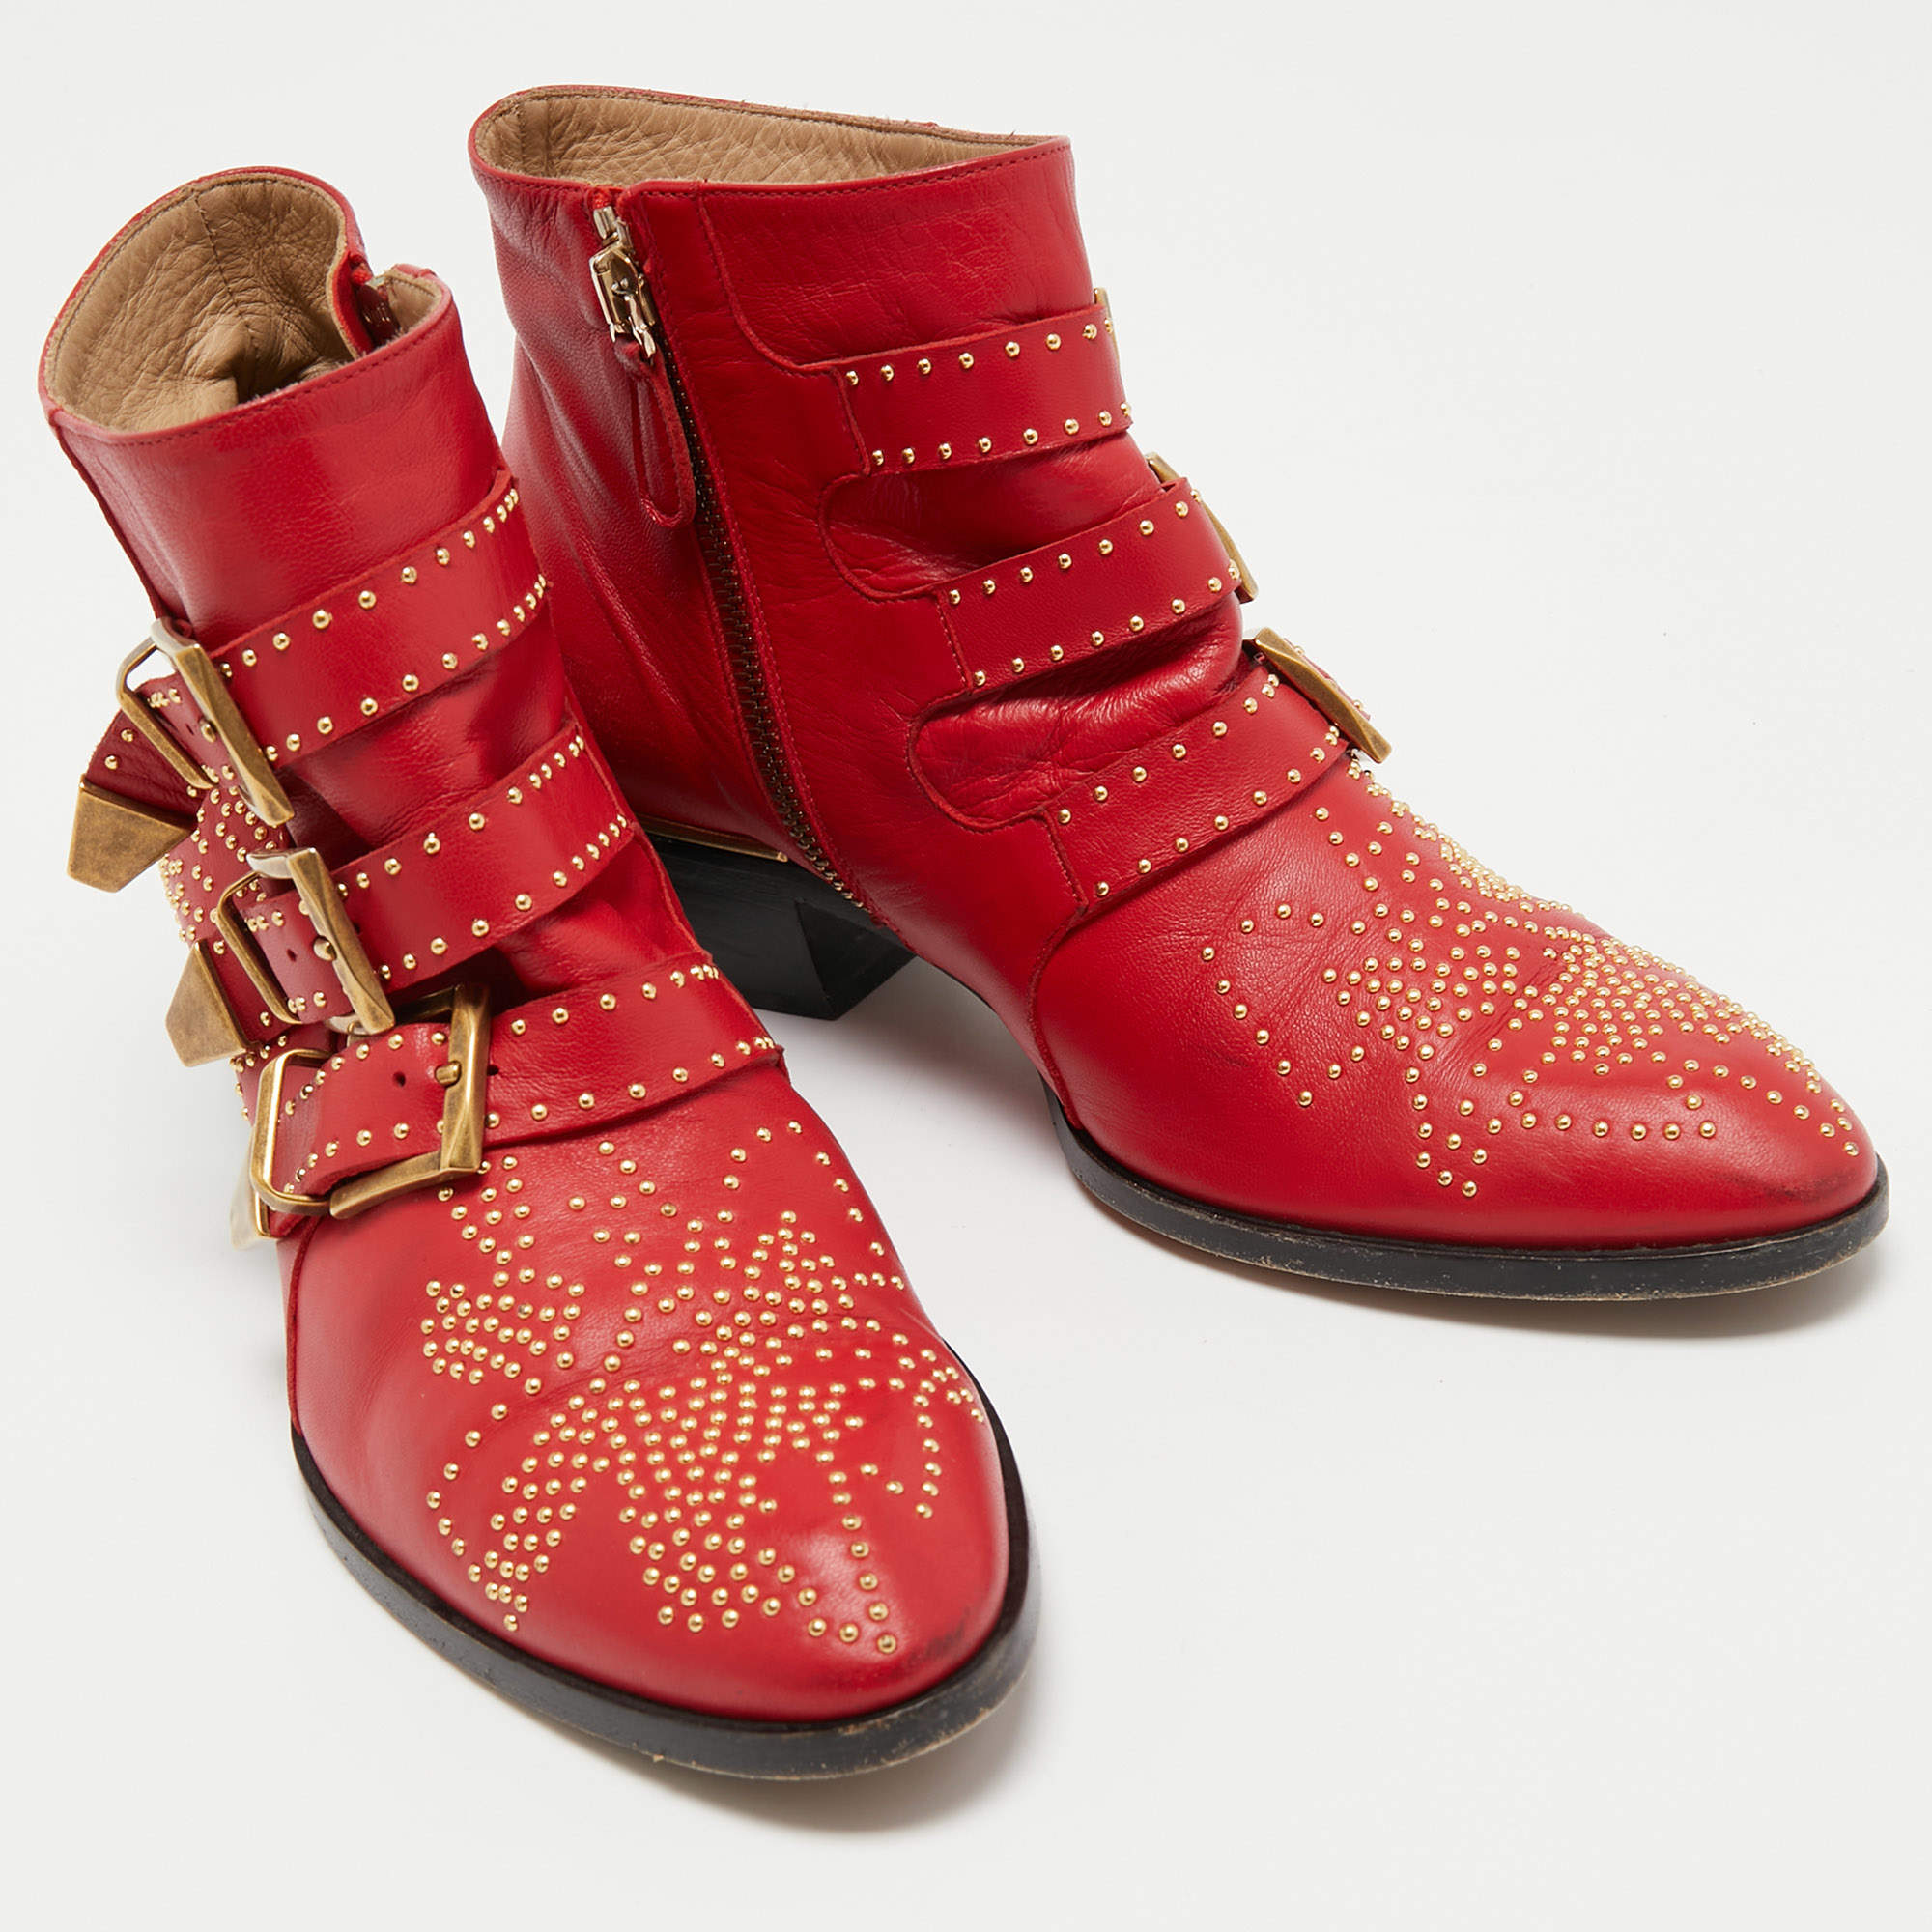 Efterår skuespillerinde Årvågenhed Chloe Red Leather Susanna Studded Ankle Length Boots Size 37.5 Chloe | TLC